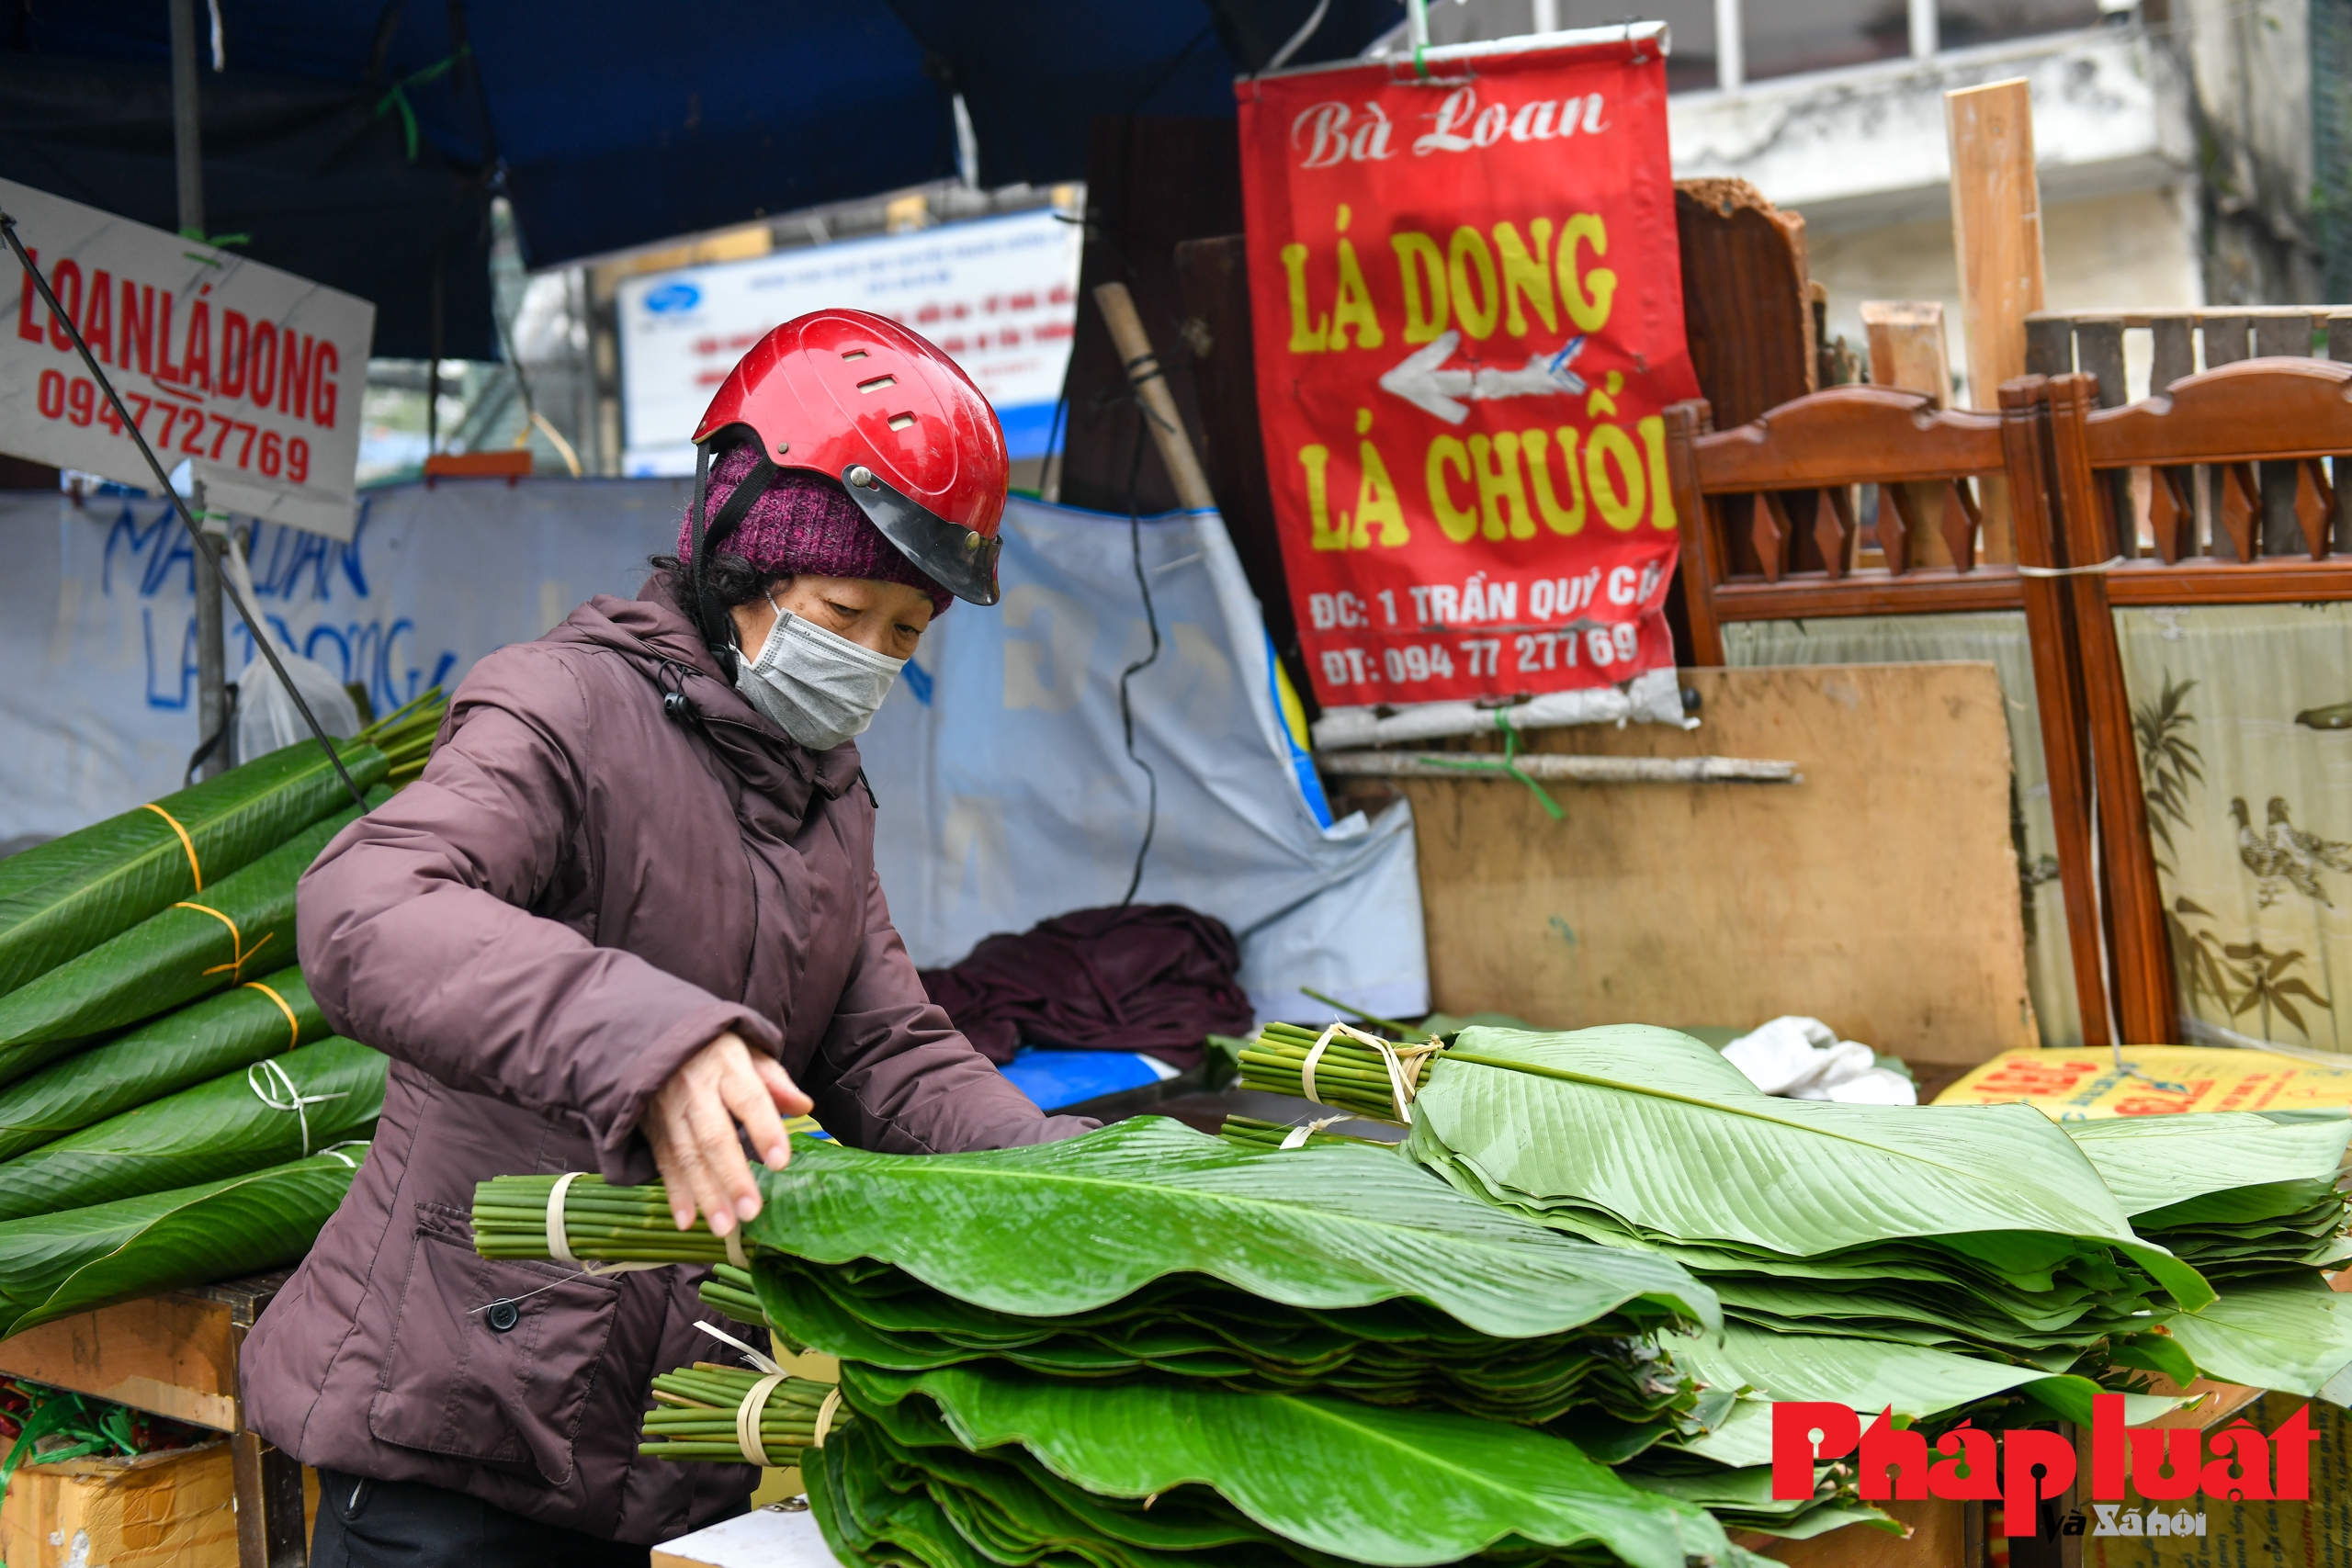 Chợ lá dong Trần Quý Cáp lưu giữ nét cổ xưa giữa lòng Hà Nội